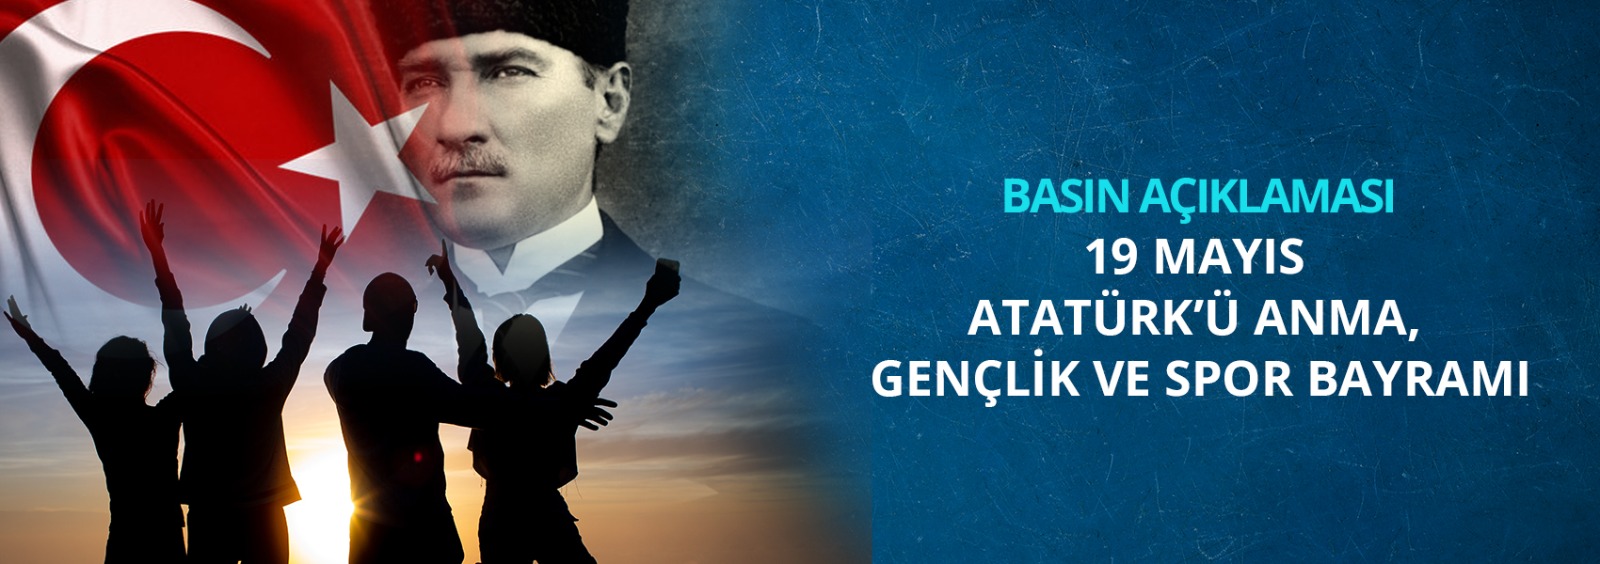 19 Mayıs Atatürk'ü Anma, Gençlik Ve Spor Bayramına İlişkin Basın Açıklaması